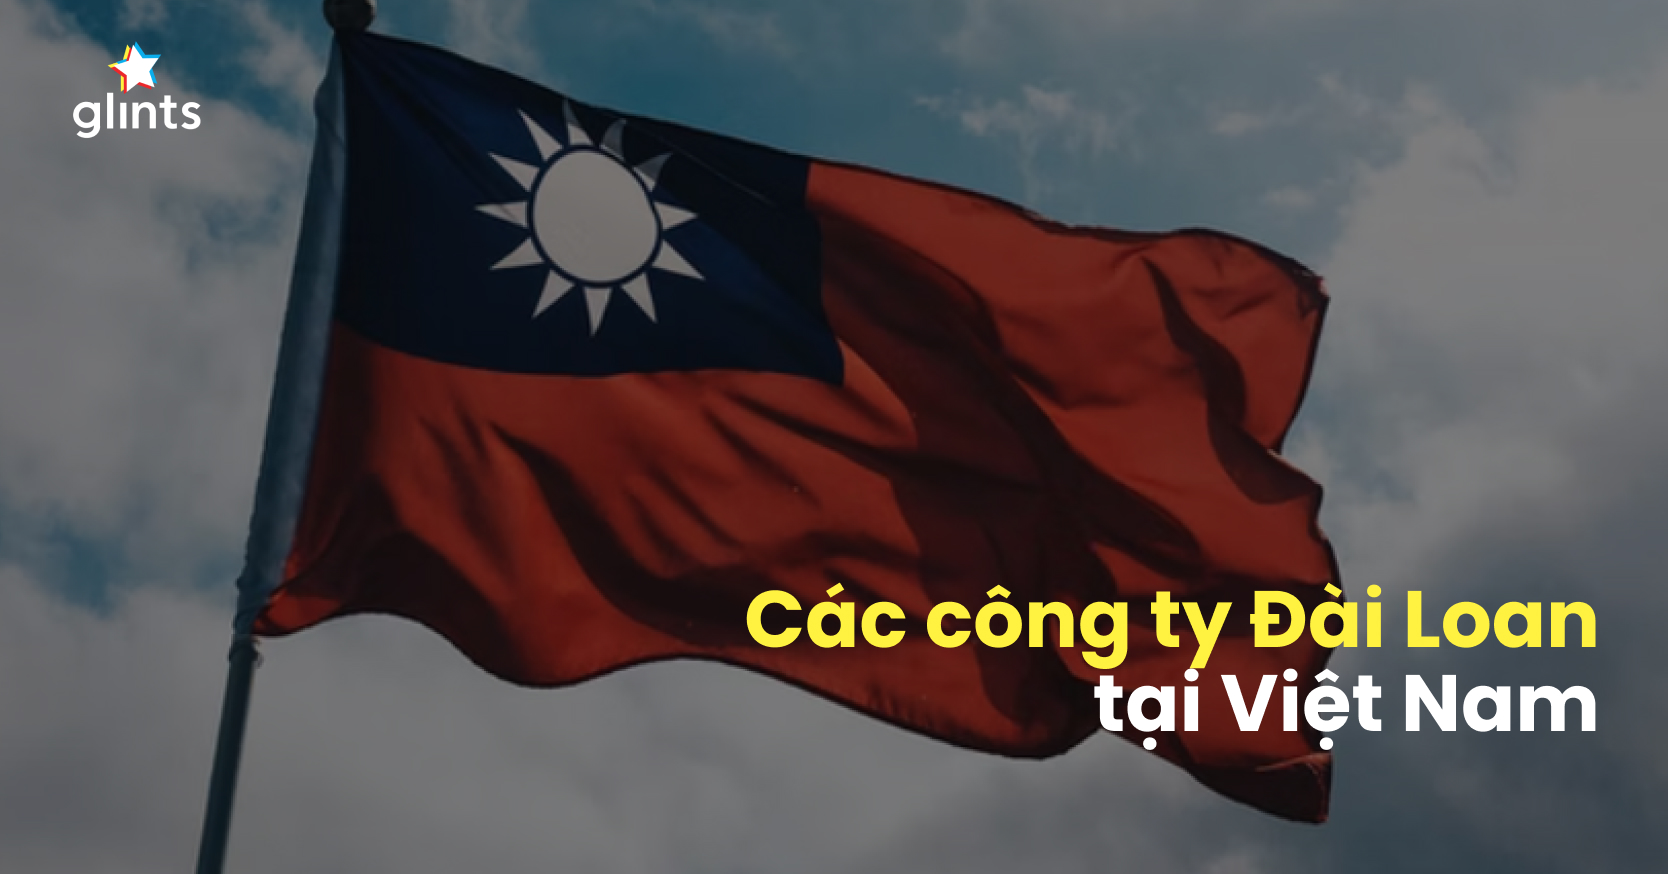 Các công ty Đài Loan đã nhanh chóng trở thành những thương hiệu uy tín tại thị trường Việt Nam nhờ vào sự đổi mới và chất lượng sản phẩm cao. Năm 2024, họ đã tạo ra nhiều giải pháp kỹ thuật số hiệu quả để đáp ứng nhu cầu ngày một tăng của người tiêu dùng Việt Nam. Những hình ảnh về các sản phẩm chất lượng cao của các công ty Đài Loan sẽ chắc chắn thu hút sự quan tâm của bạn.